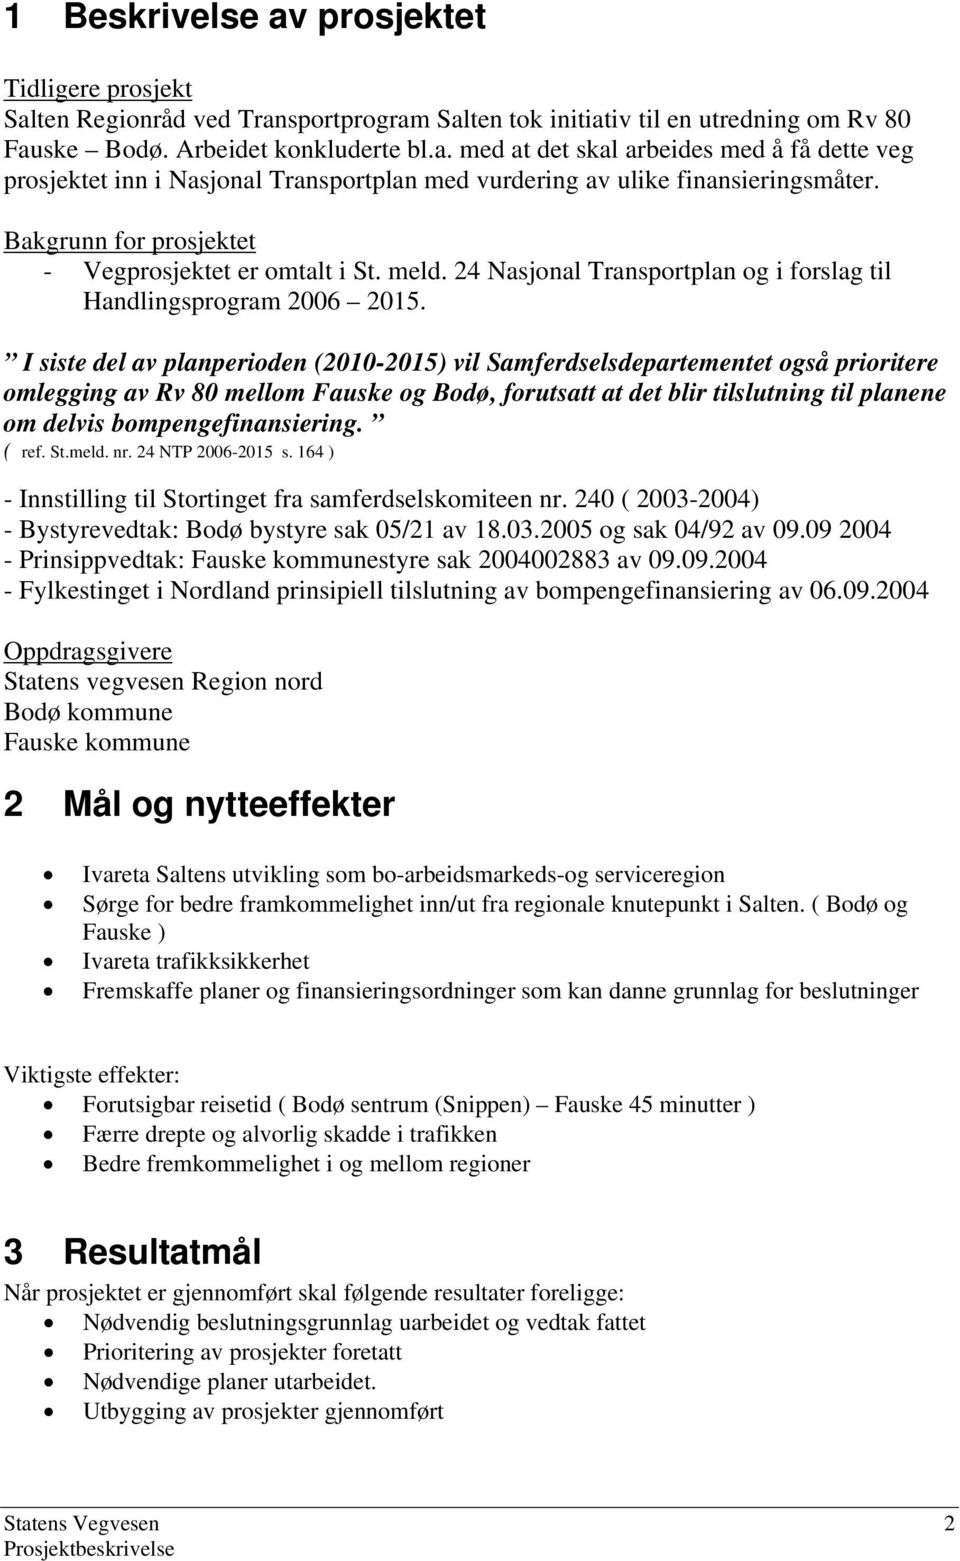 I siste del av planperioden (2010-2015) vil Samferdselsdepartementet også prioritere omlegging av Rv 80 mellom Fauske og Bodø, forutsatt at det blir tilslutning til planene om delvis